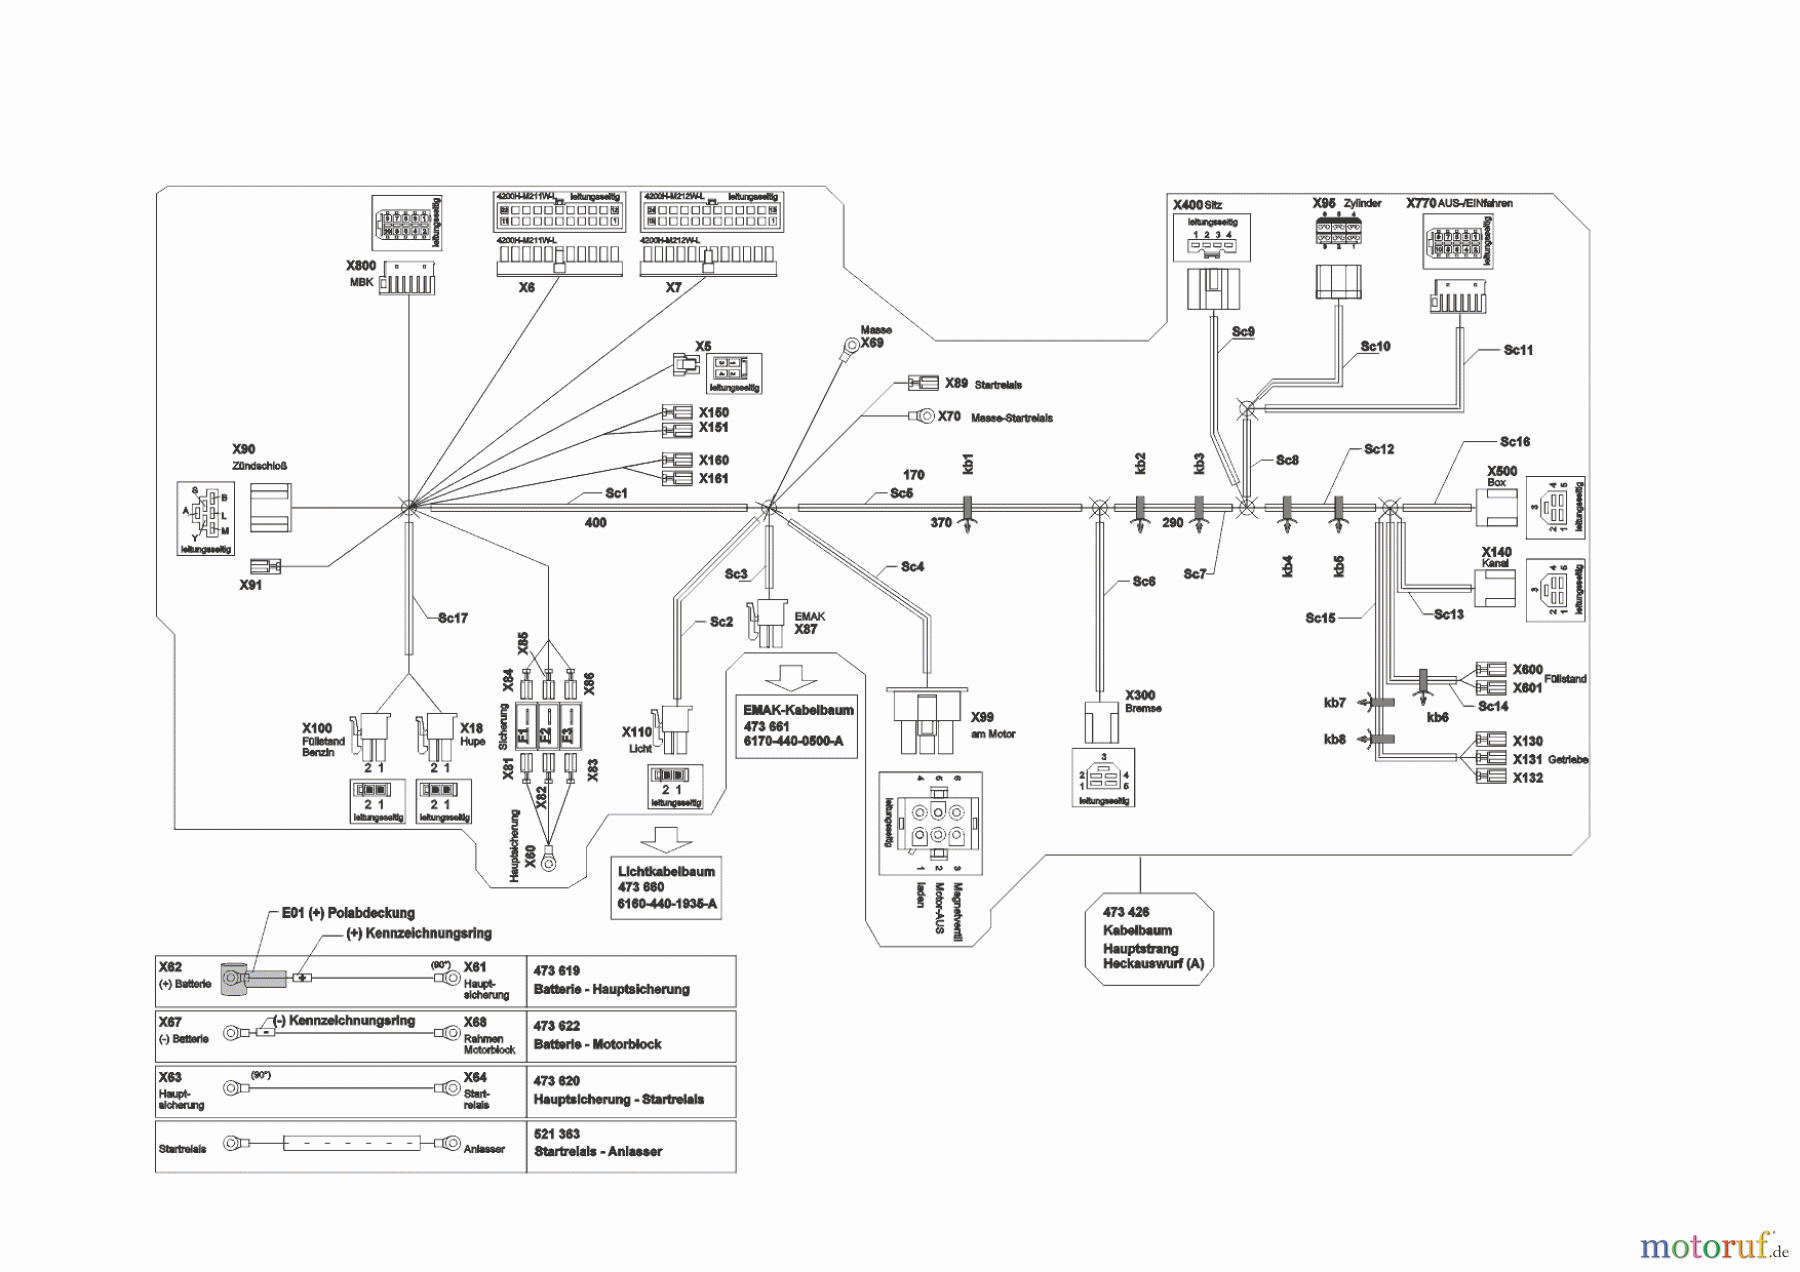  Powerline Gartentechnik Rasentraktor  T23-125.4 HD V2  ab 06/2015 Seite 10